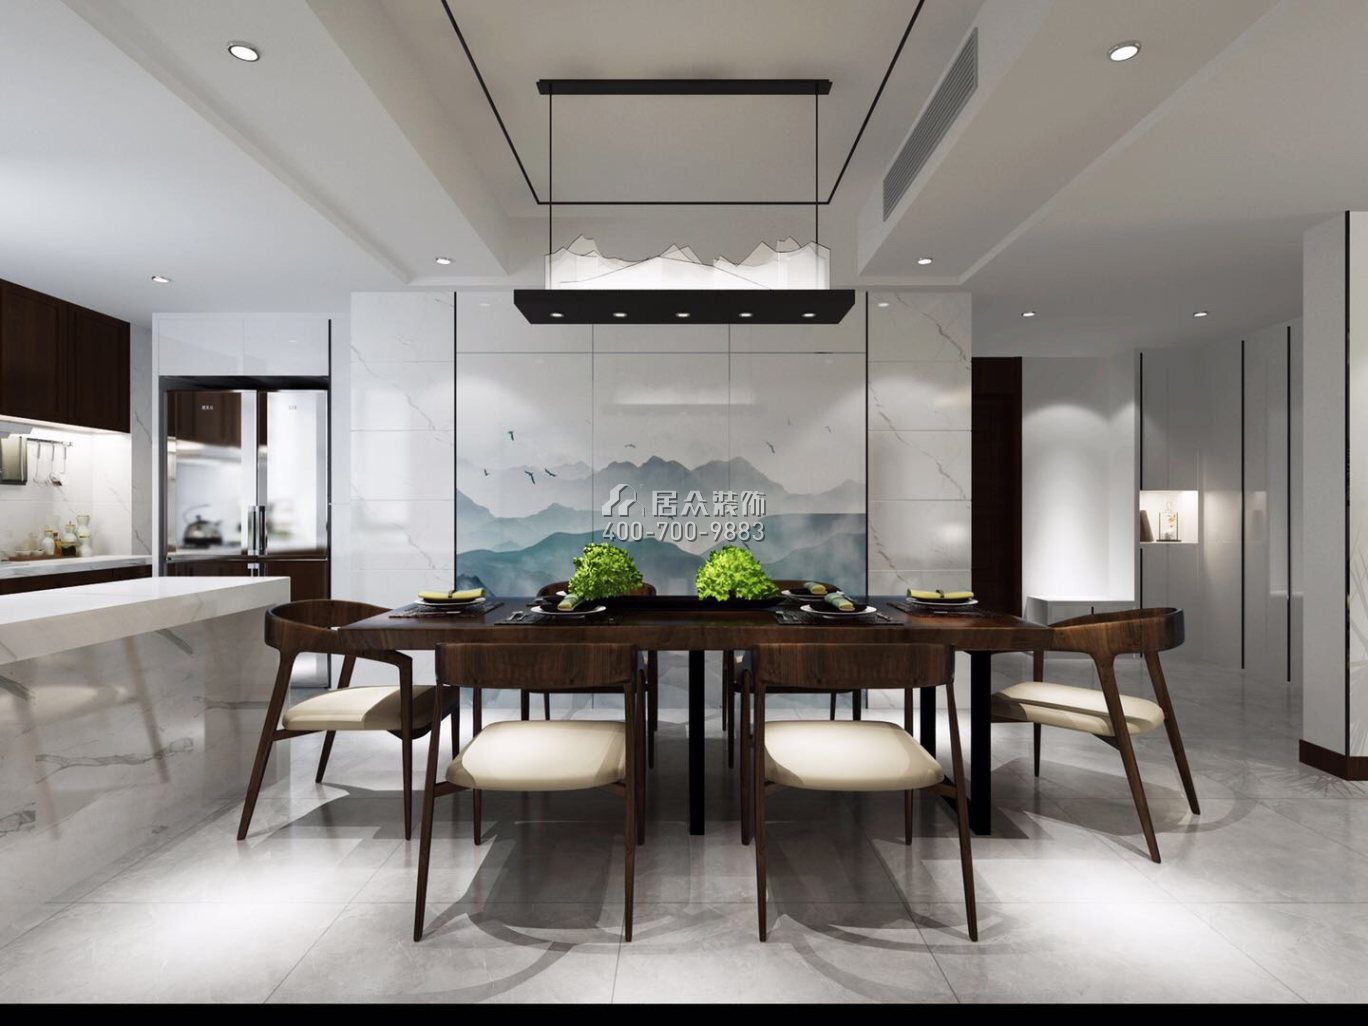 润景园139平方米中式风格平层户型餐厅装修效果图